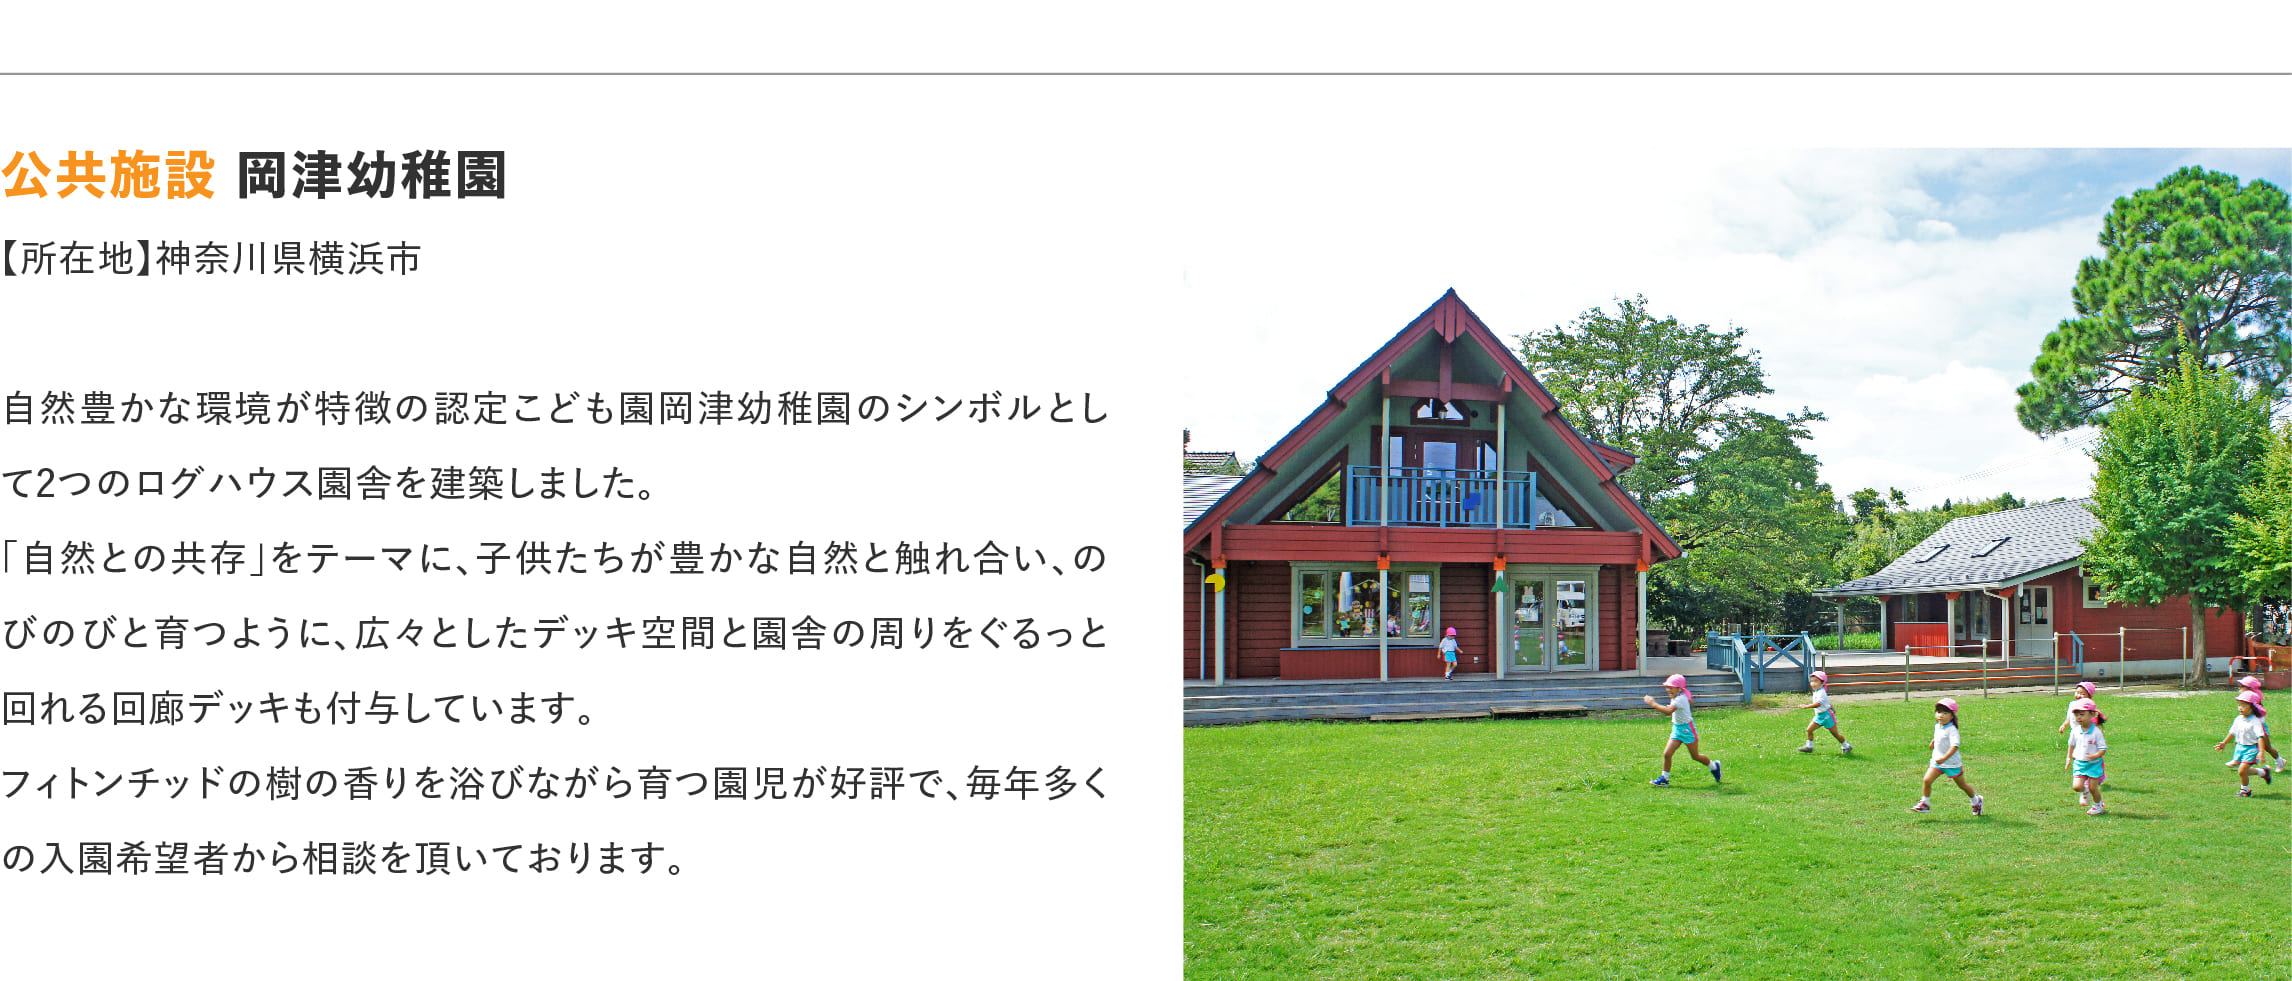 ログハウスのビックボックス,岡津幼稚園